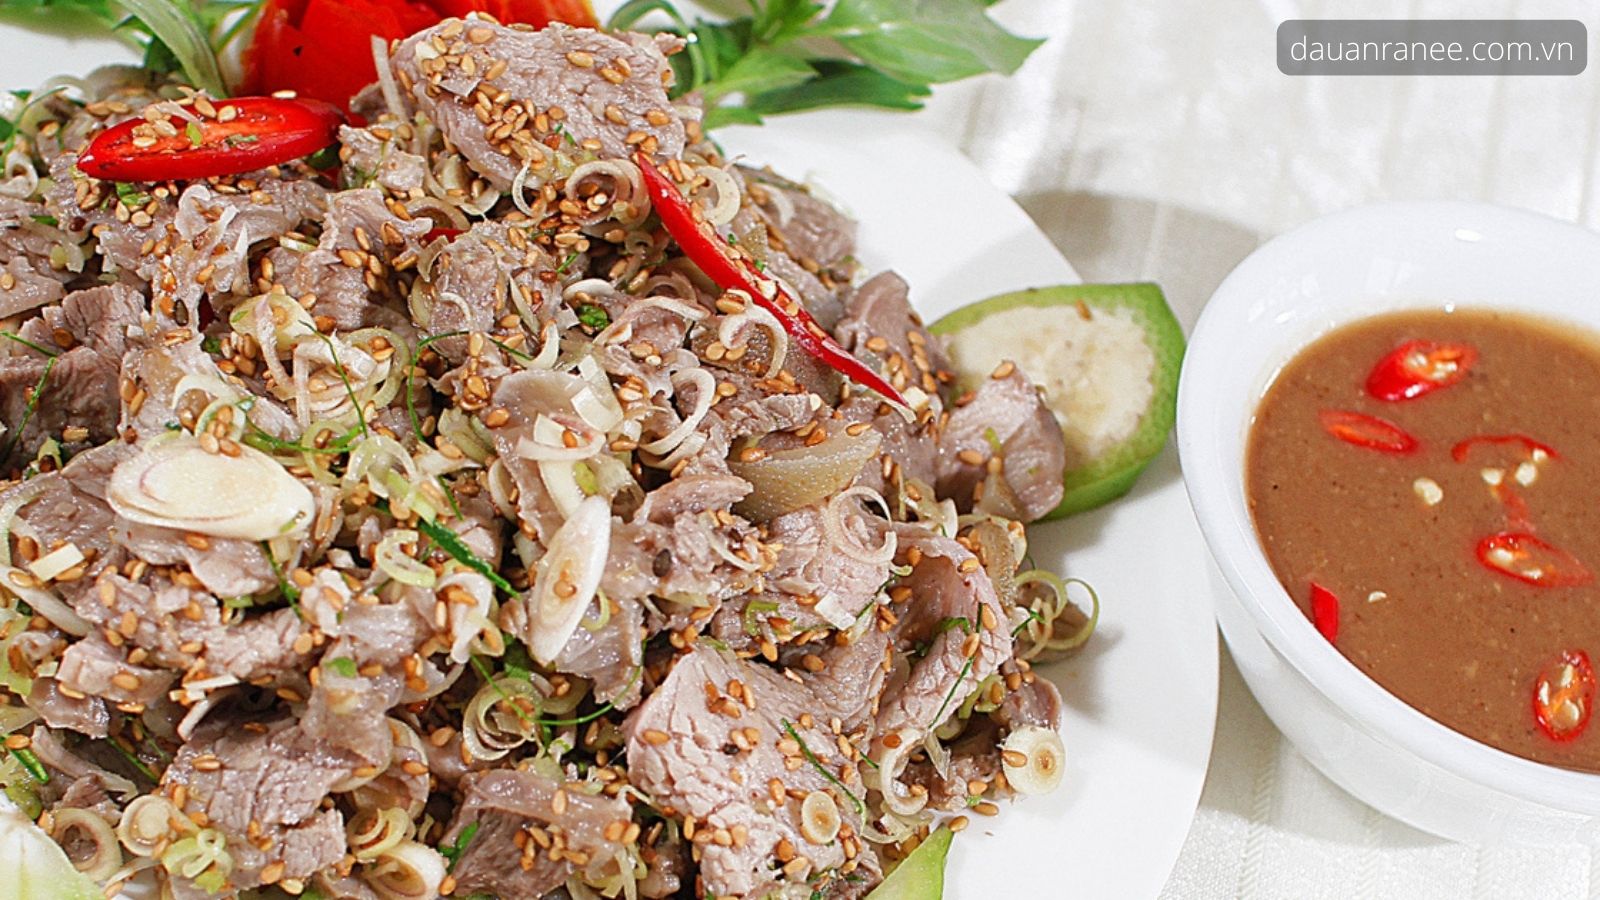 Đặc sản Dê Núi Ninh Bình - Khám phá ẩm thực Ninh Bình nổi tiếng